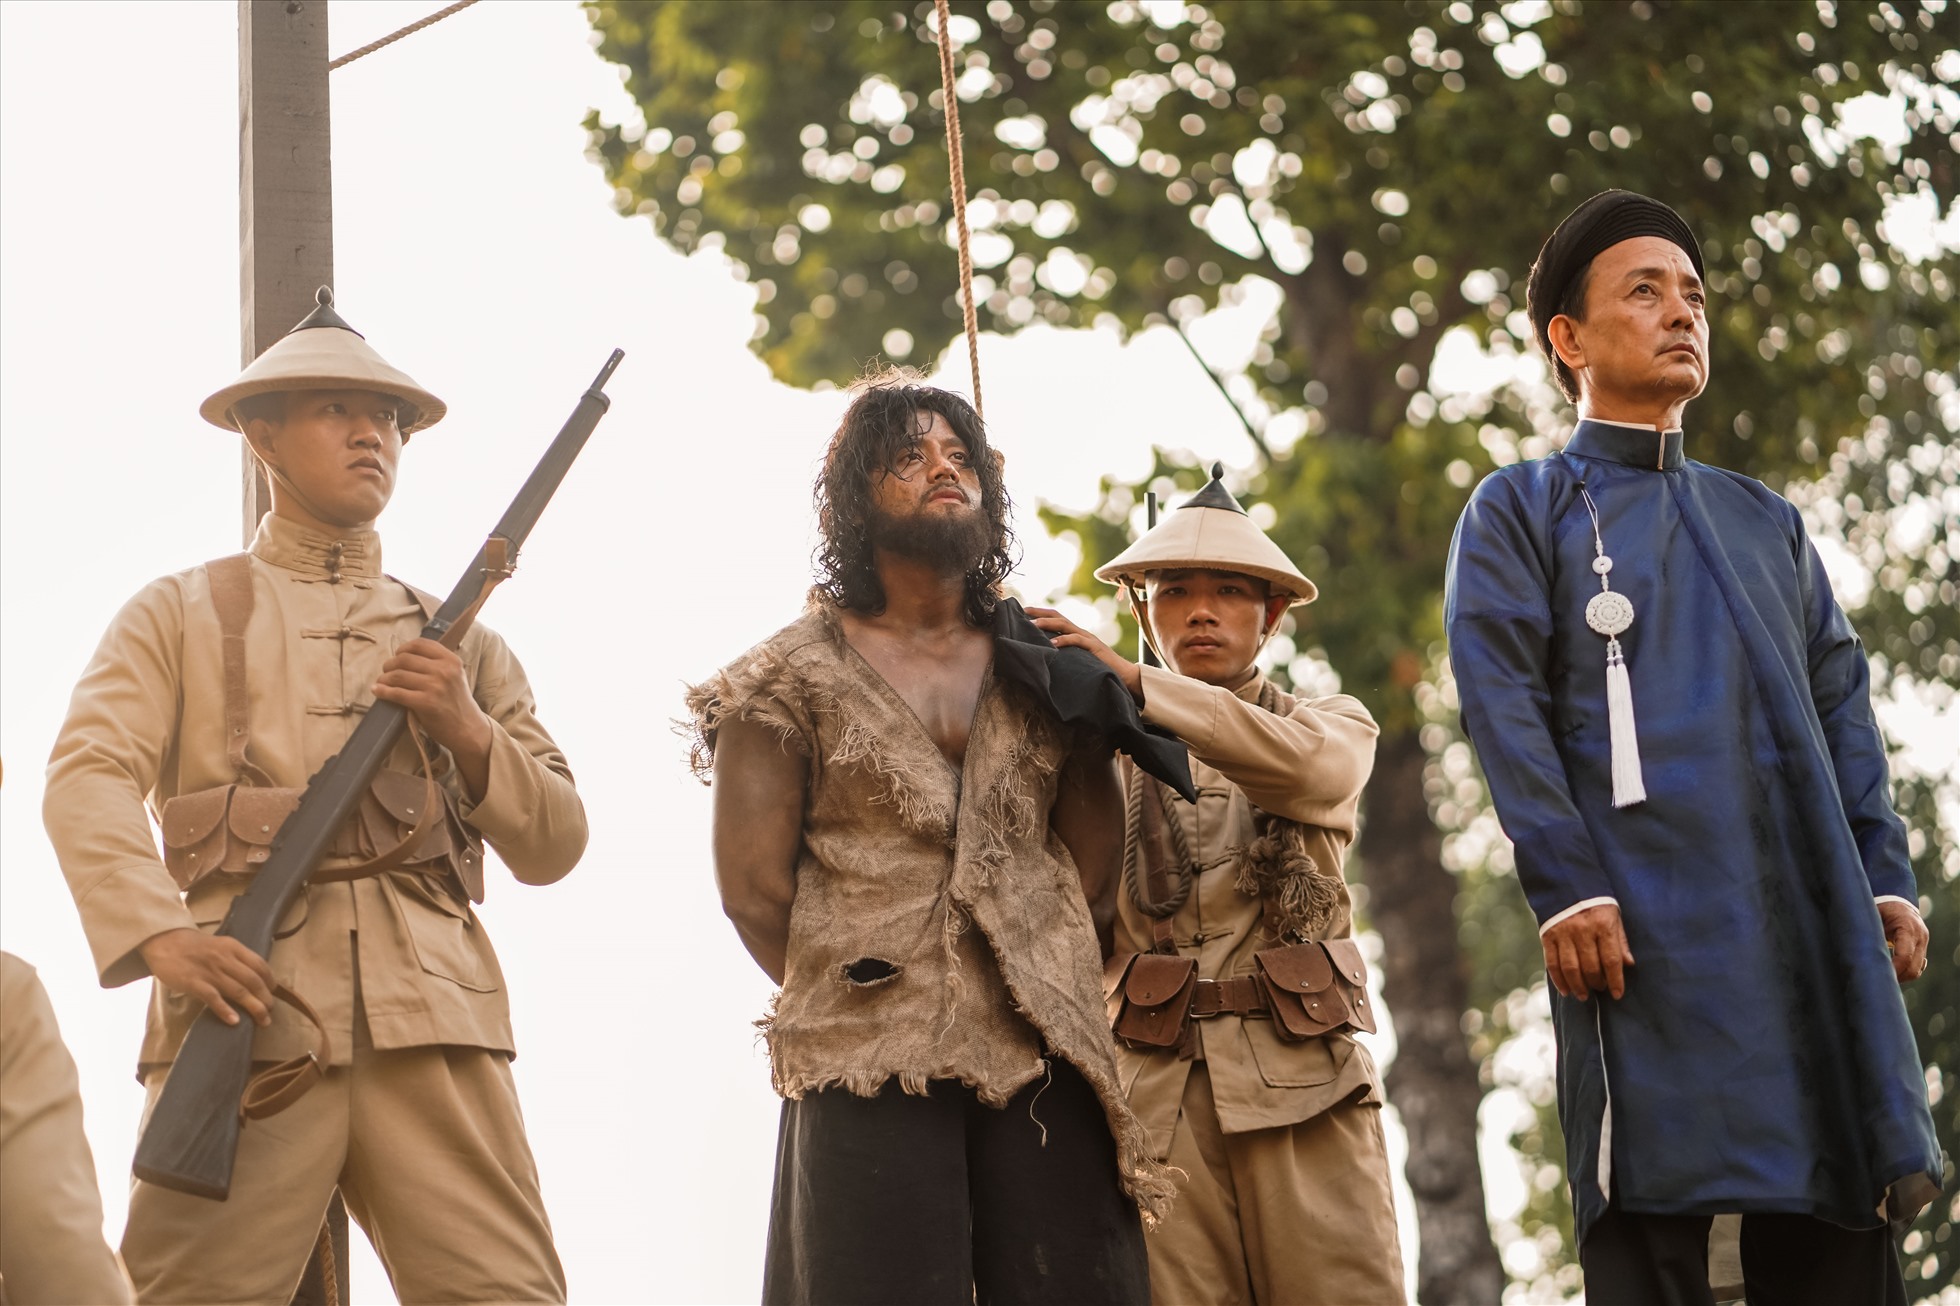 Sau khi phim điện ảnh “Đất rừng phương Nam” công bố trailer chính thức, vai diễn Võ Tòng của Mai Tài Phến nhanh chóng nhận được sự chú ý dù chỉ xuất hiện thoáng qua trong vài phân cảnh.